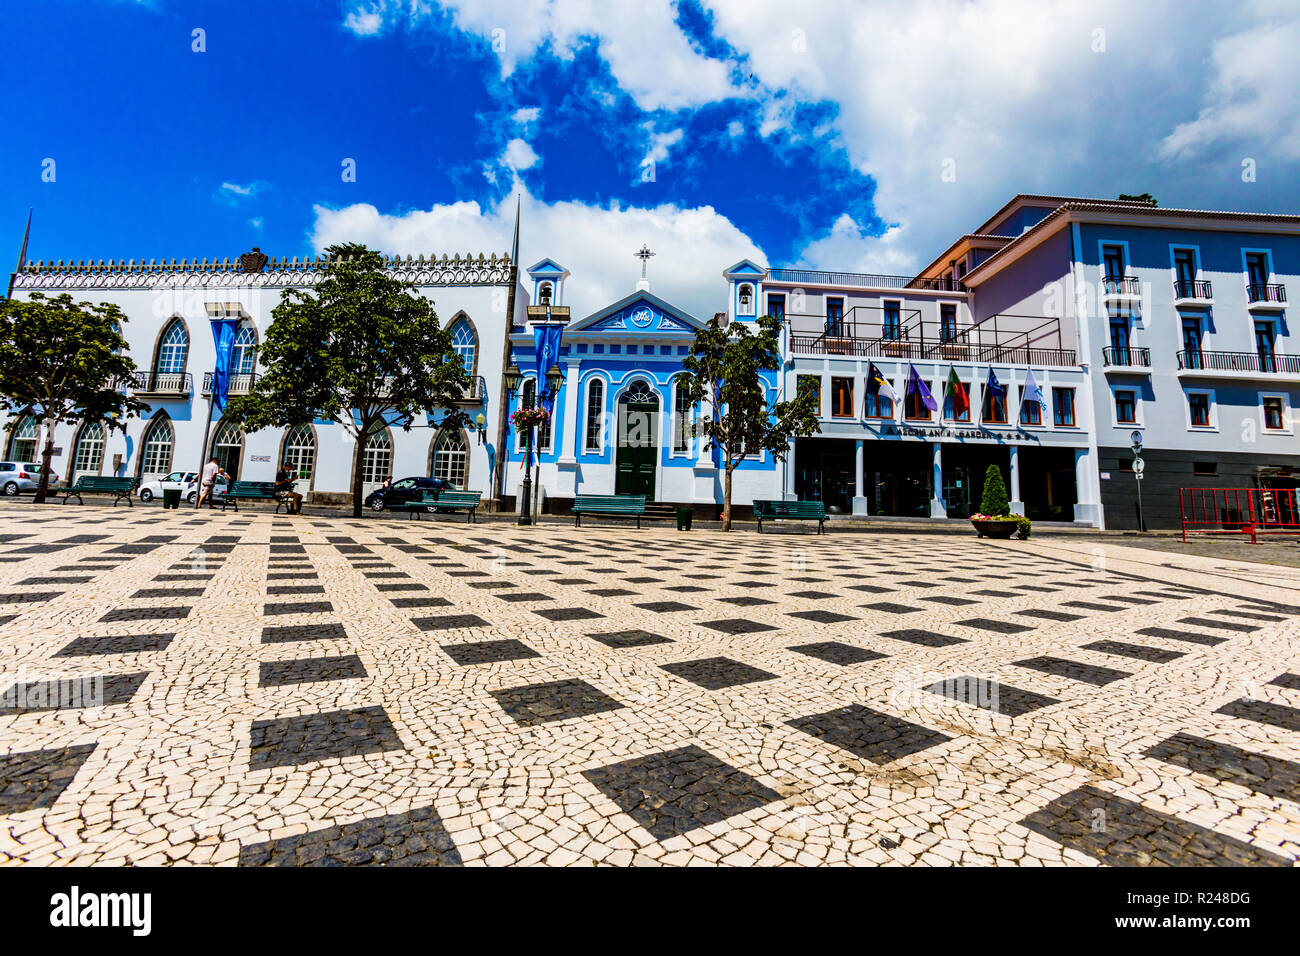 Gli edifici colorati nella cittadina chiamata Sao Mateus abitato attorno all'isola Terceira, Azzorre, Portogallo, Atlantico, Europa Foto Stock